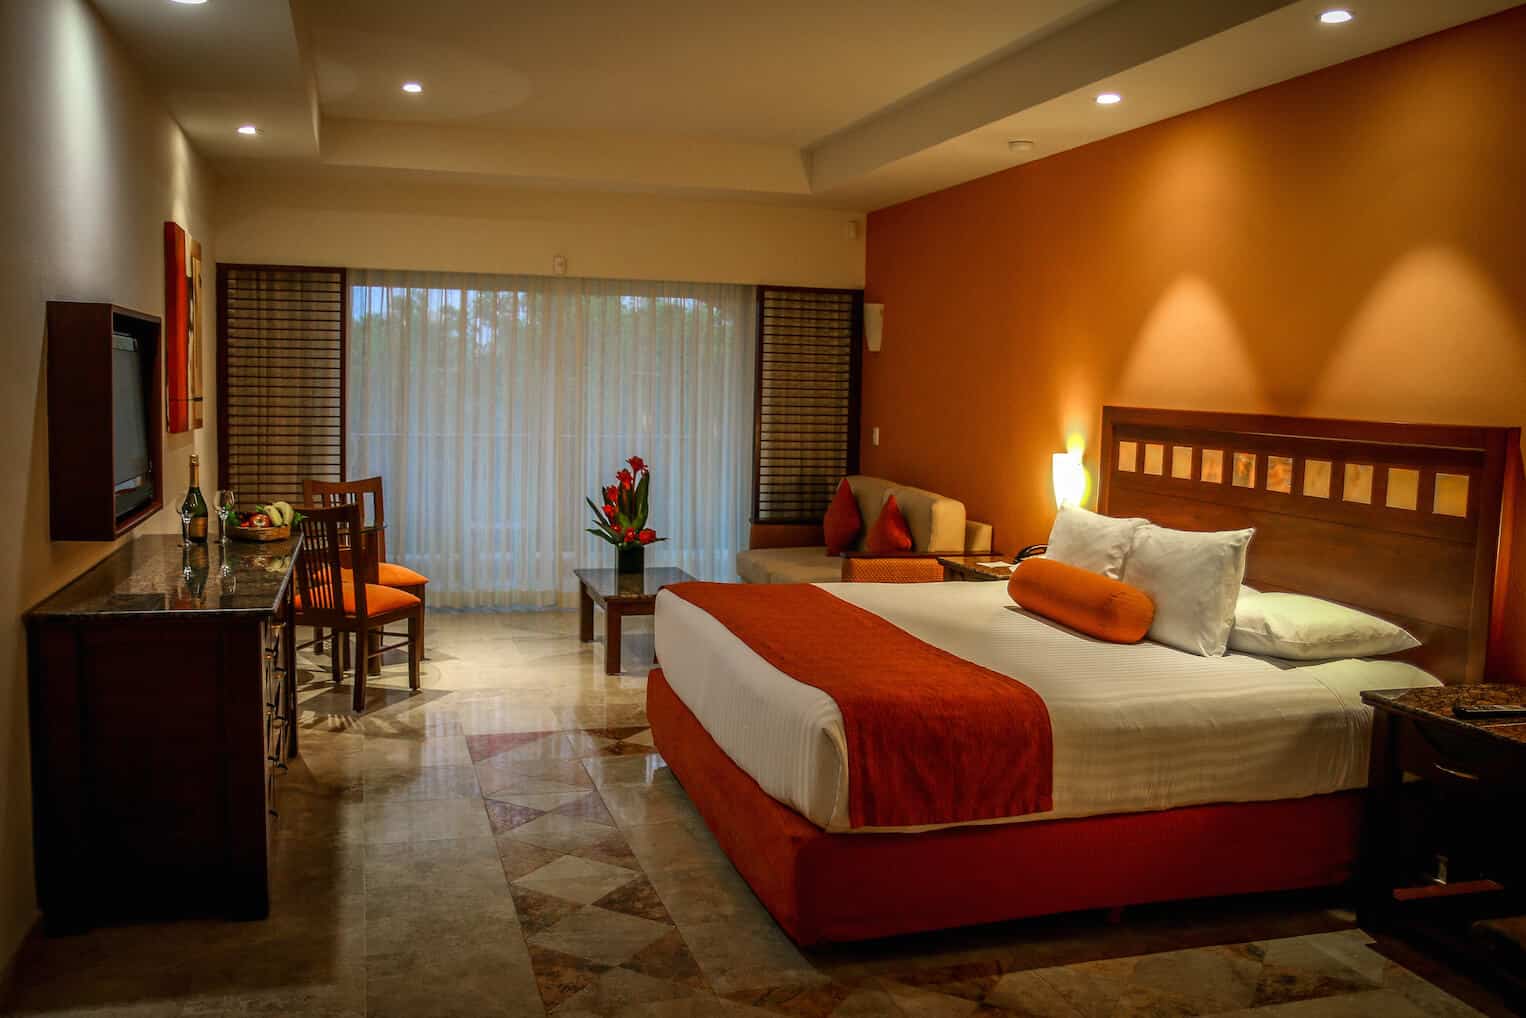 Our suite at Hacienda Tres Rios